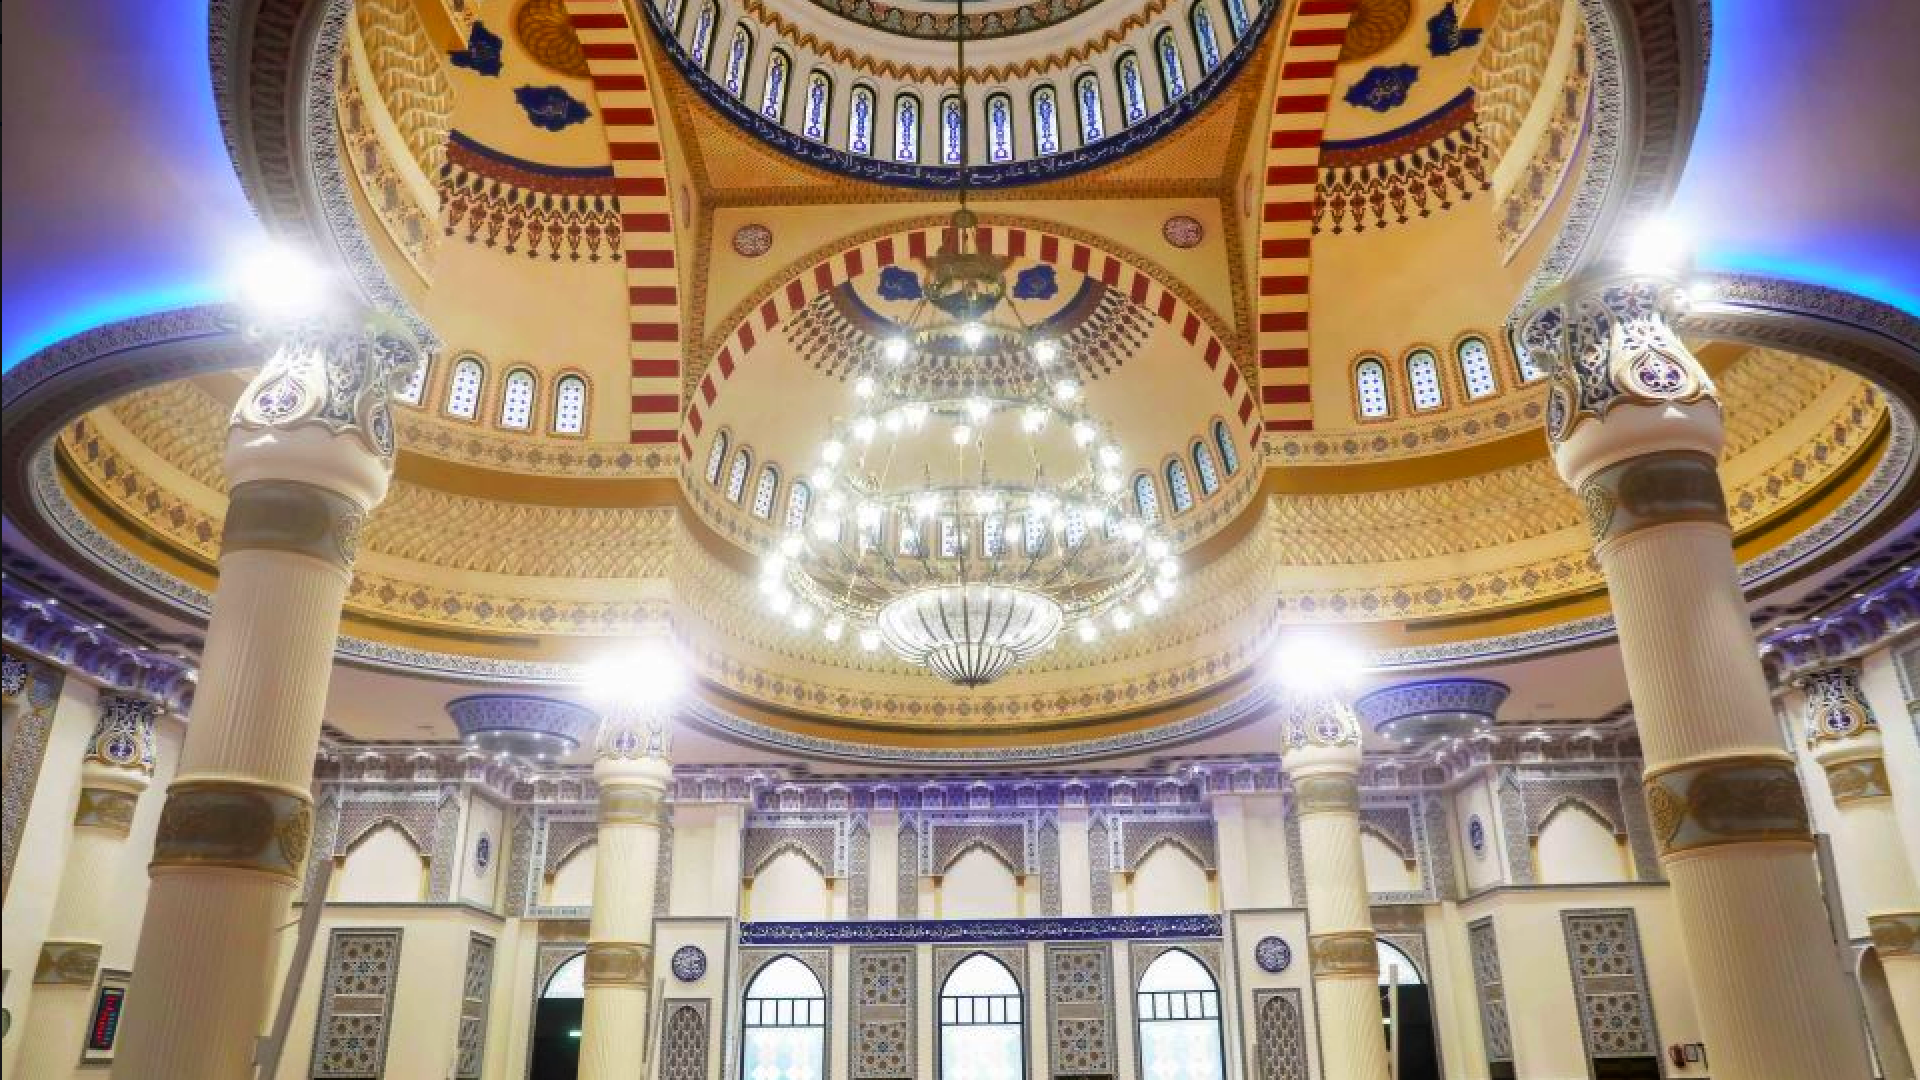 visit blue mosque dubai